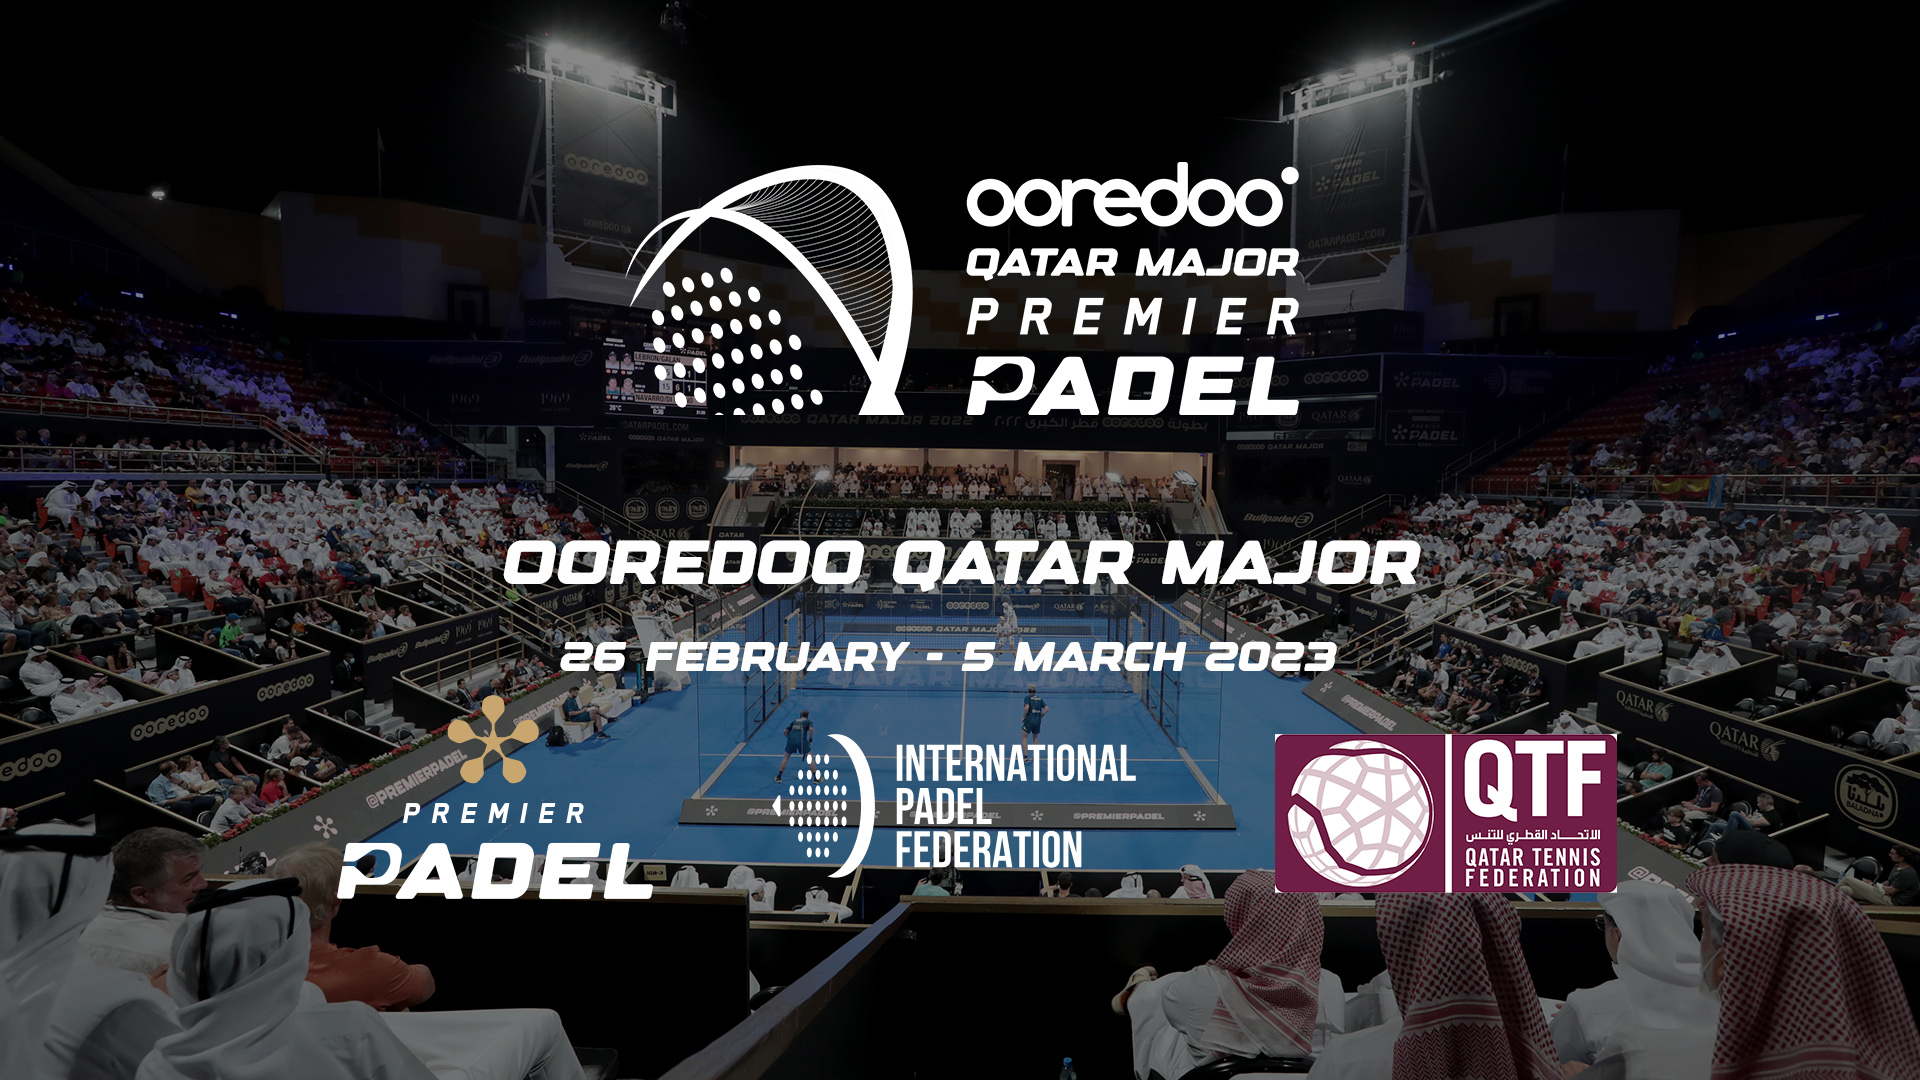 Premier Padel – Ooredoo Qatar Major 2023 em Doha de 26 de fevereiro a 5 de março!